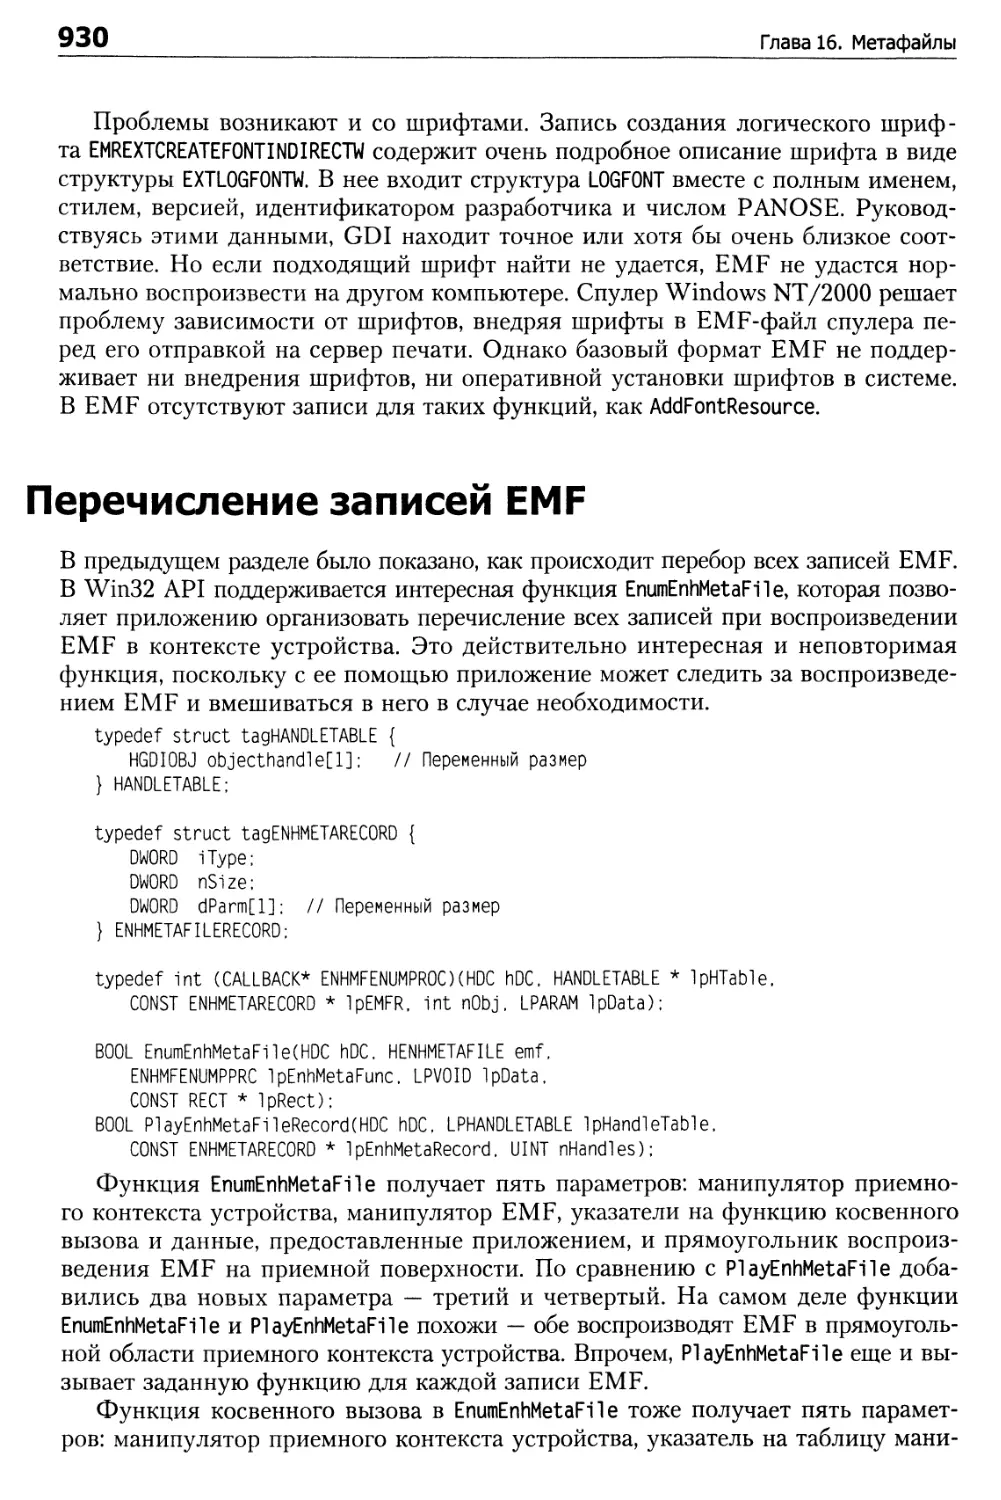 Перечисление записей EMF